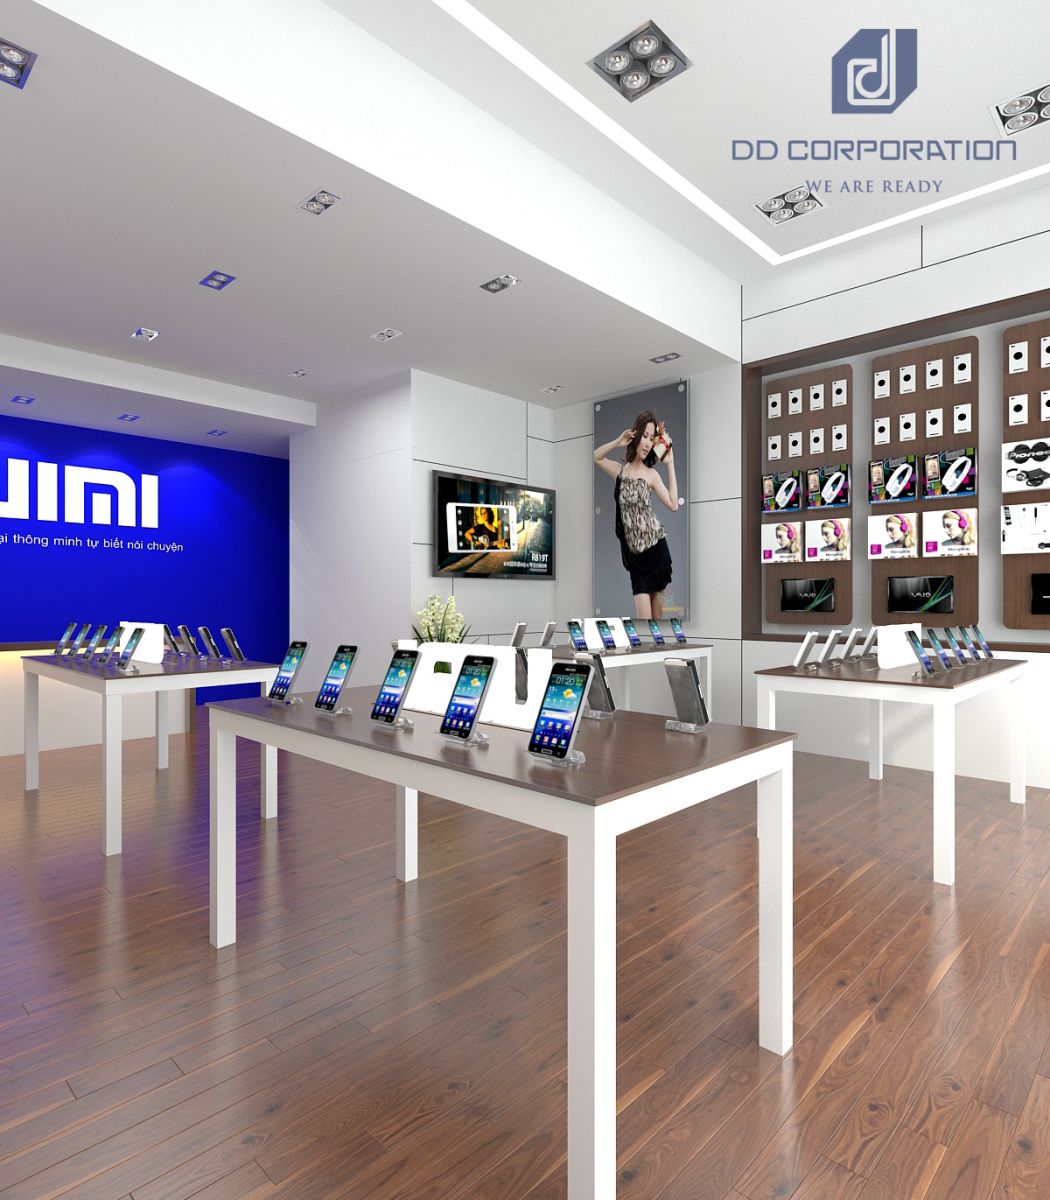 hệ thống cửa hàng điện thoại UIMI